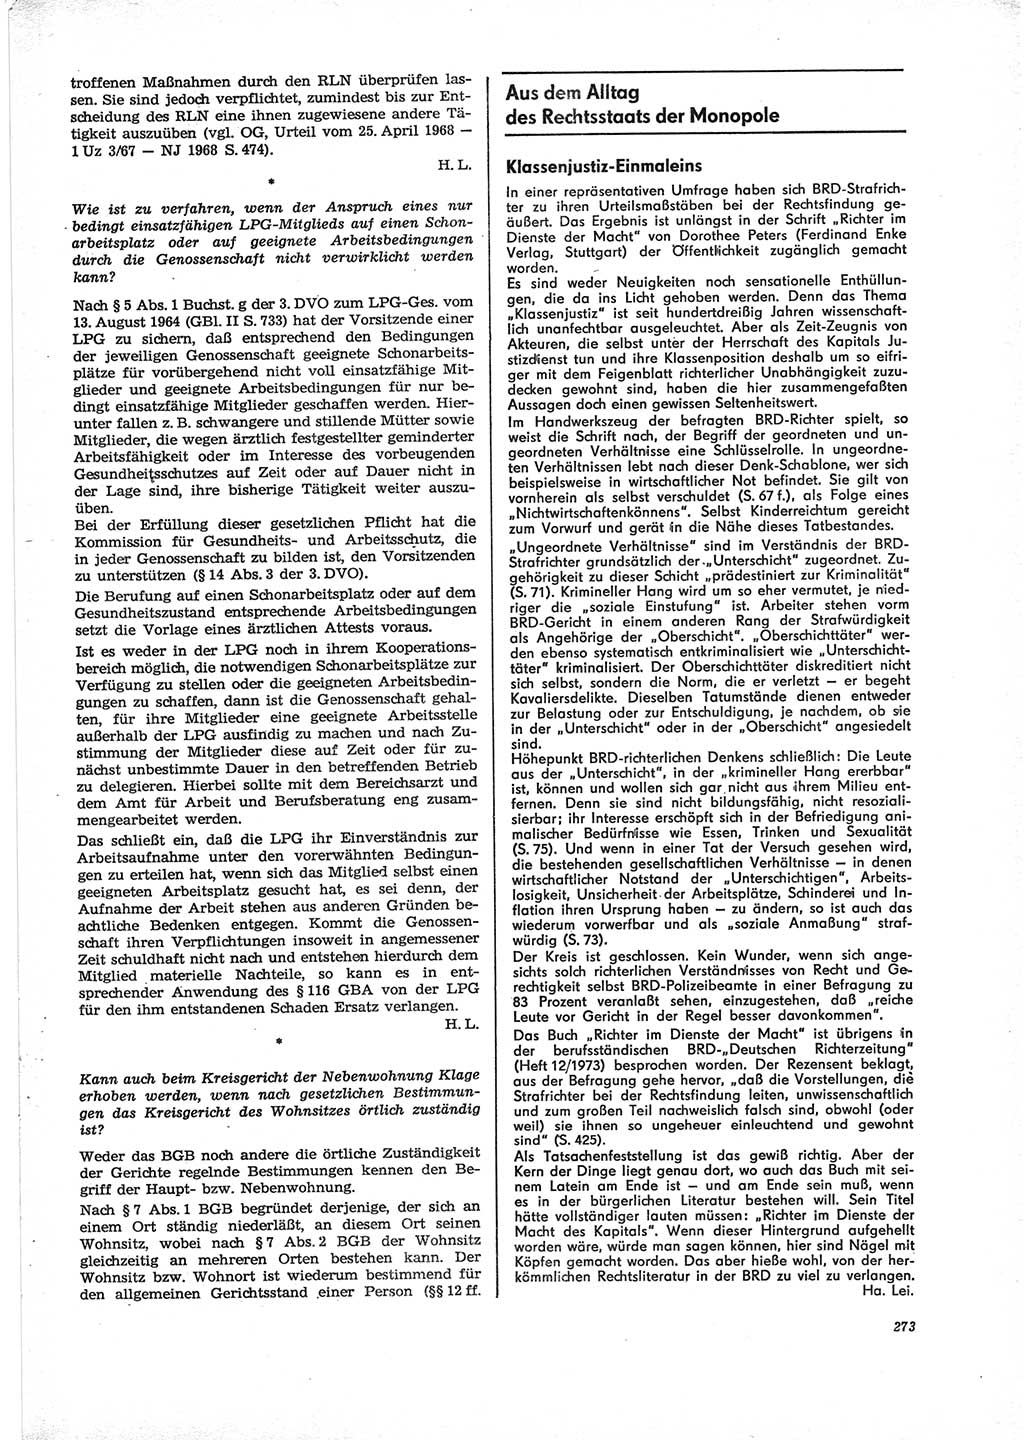 Neue Justiz (NJ), Zeitschrift für Recht und Rechtswissenschaft [Deutsche Demokratische Republik (DDR)], 28. Jahrgang 1974, Seite 273 (NJ DDR 1974, S. 273)